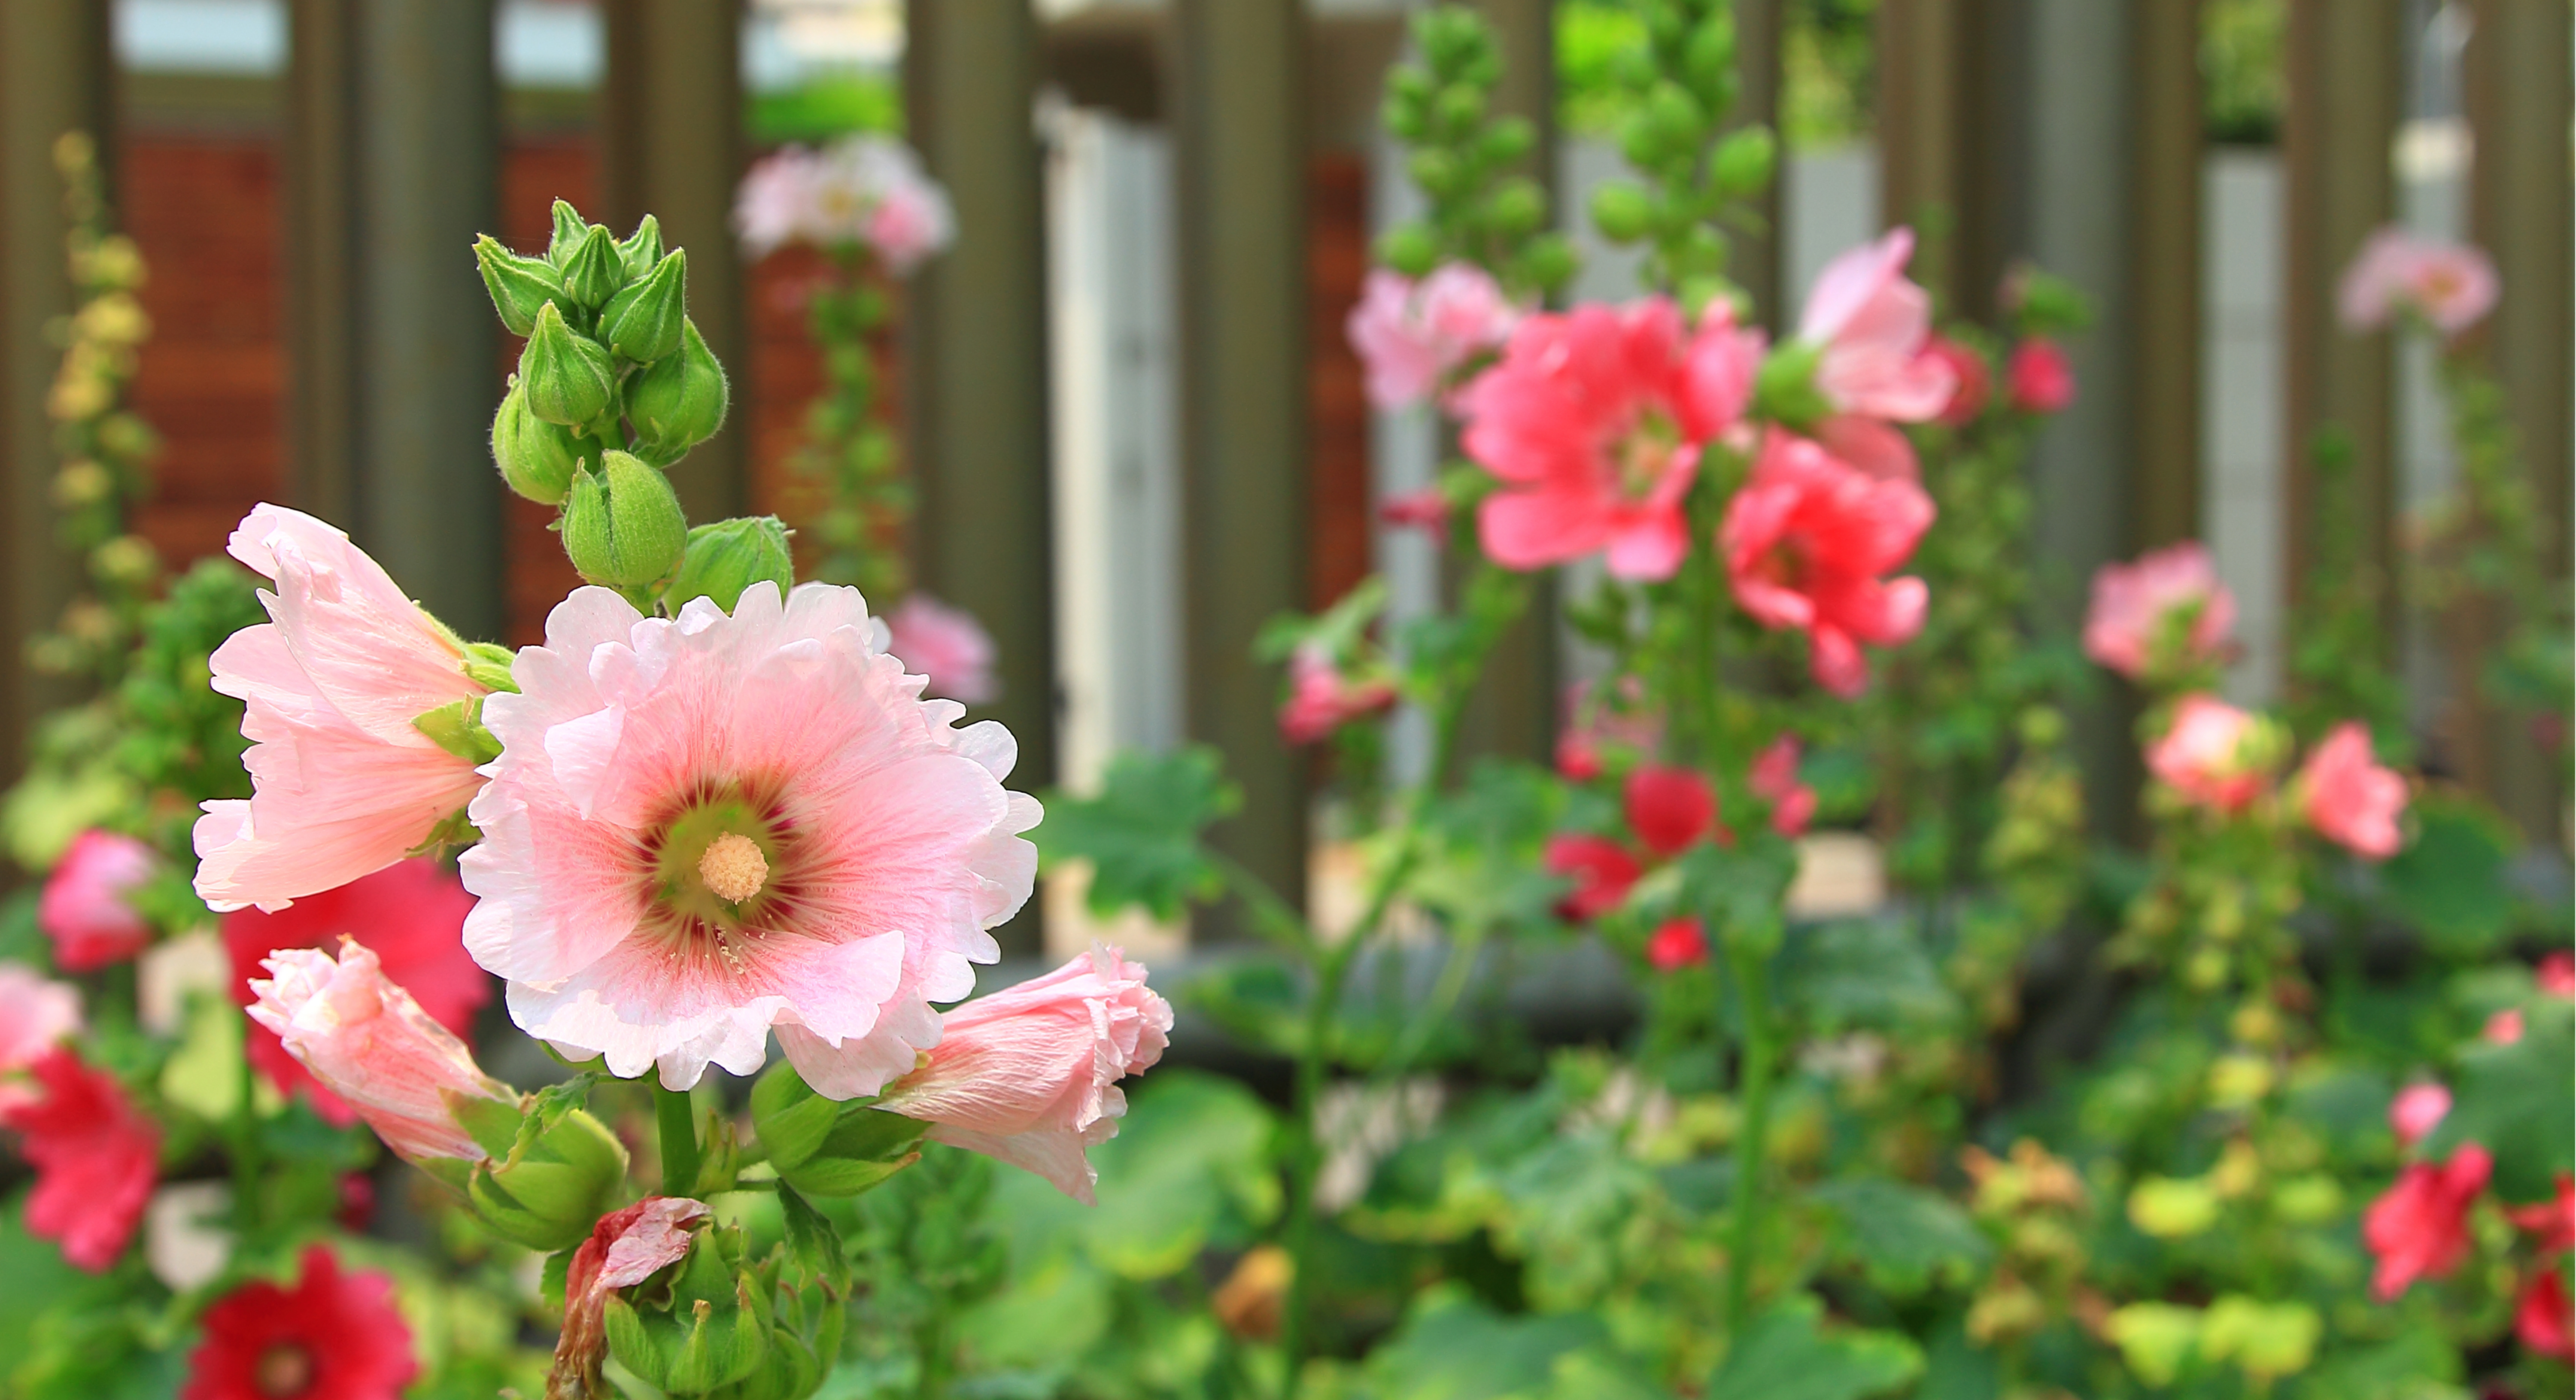 Pink garden flowers in a Franklin, Tennessee garden center.